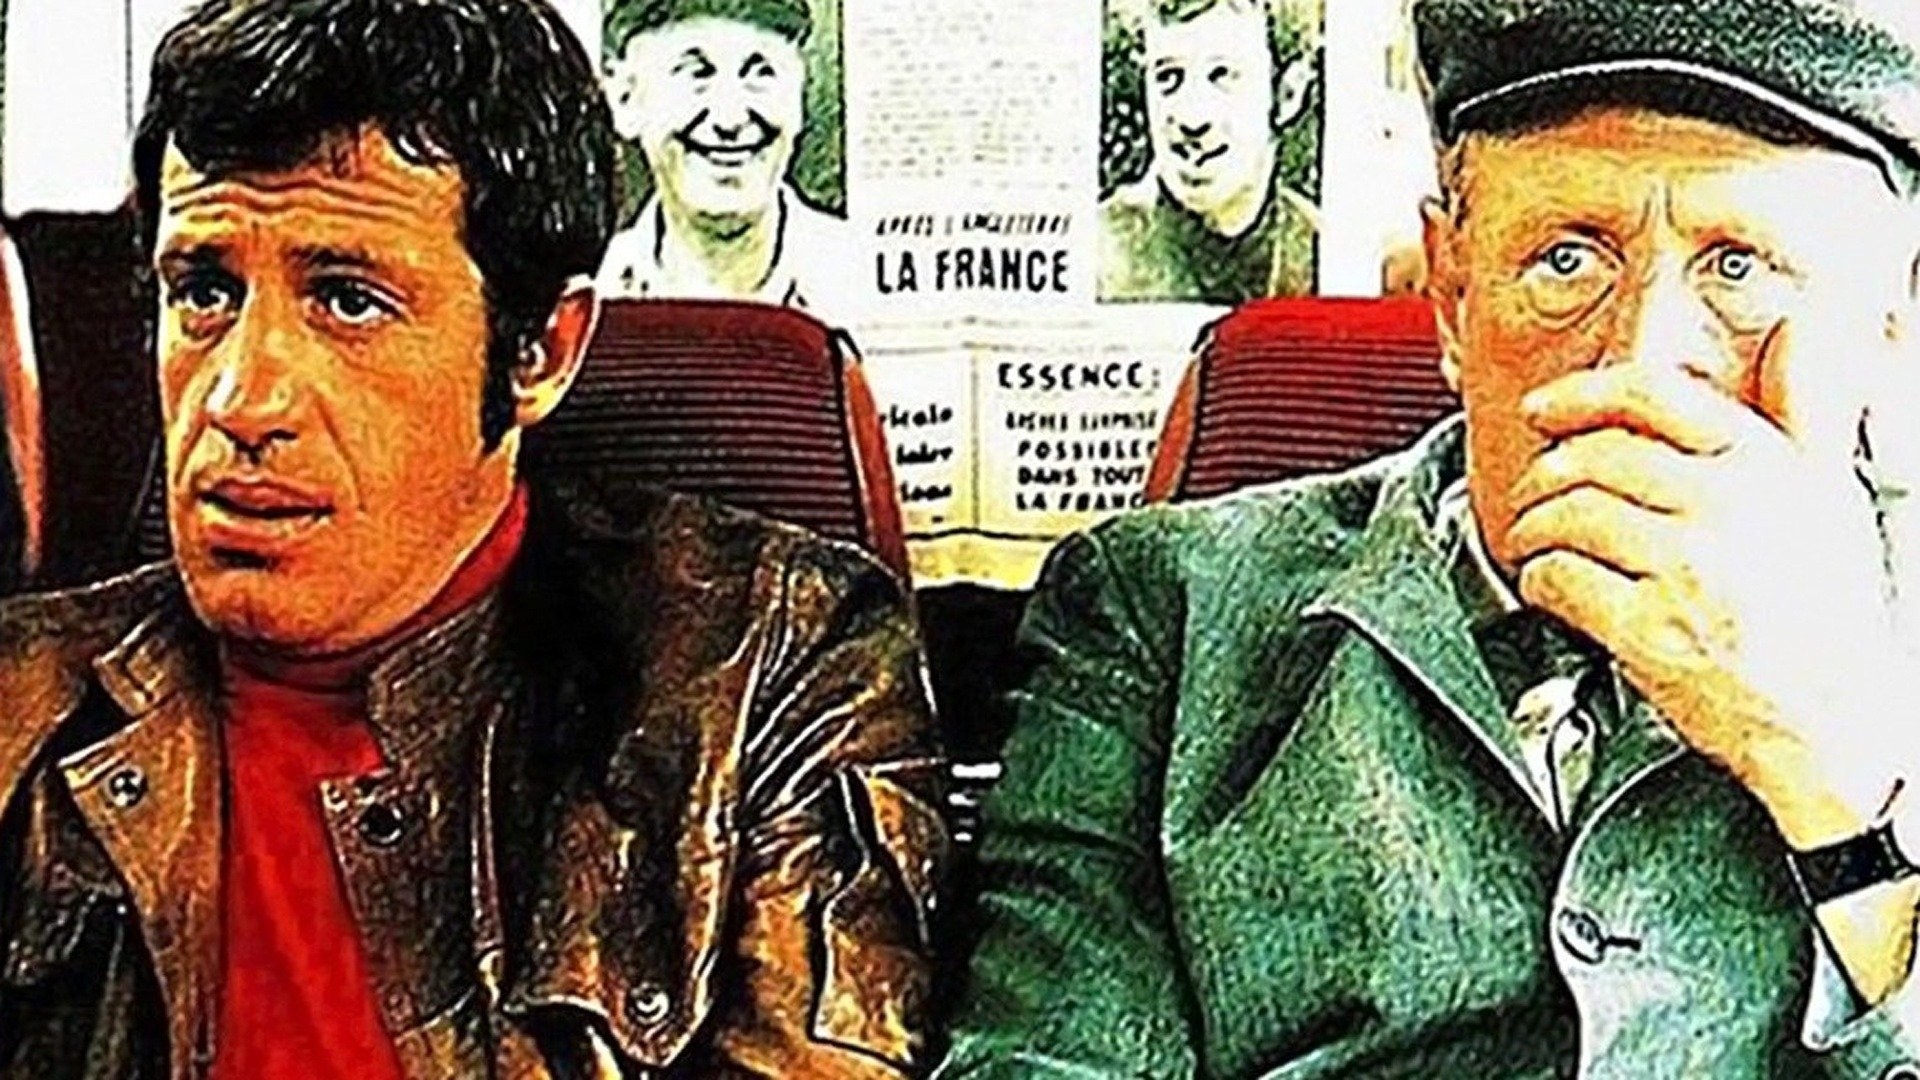 THE BRAIN Movie Still N1 8x10 in. USA - 1969 - Gérard Oury, Jean-Paul  Belmondo